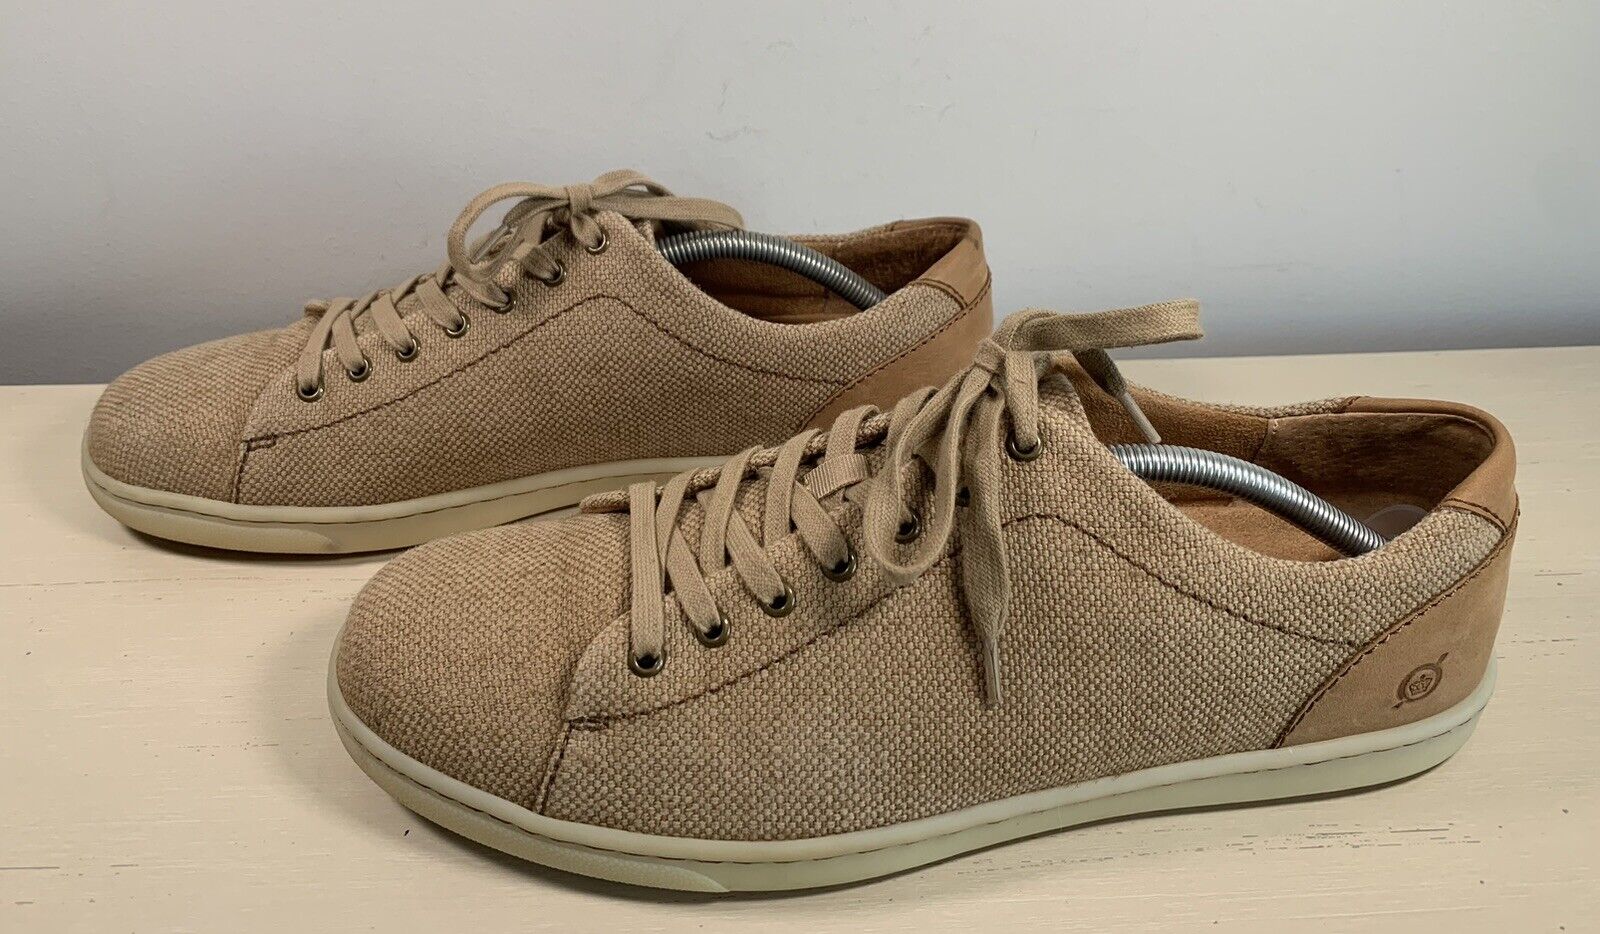 lette Over hoved og skulder Hammer Born Artur Natural Tan Fabric Comfort Sneakers Oxfords Shoes Men's US 11.5  M 192466135782 | eBay